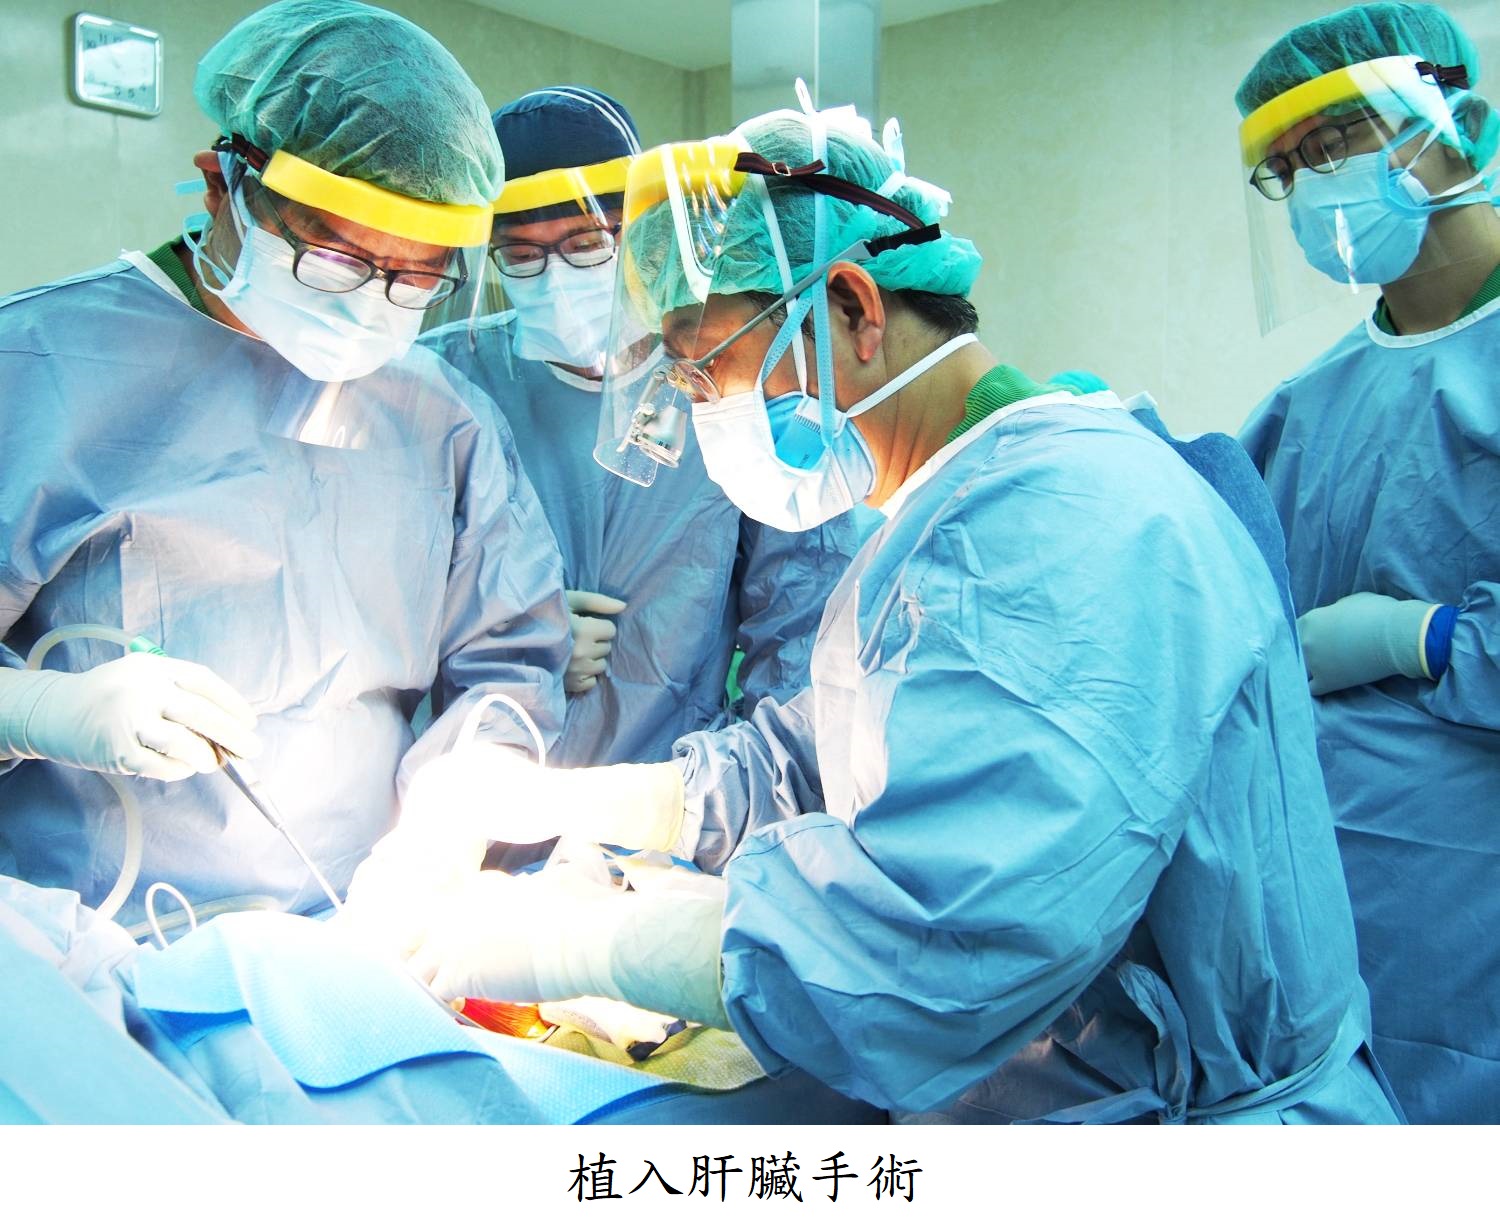 植入肝臟手術